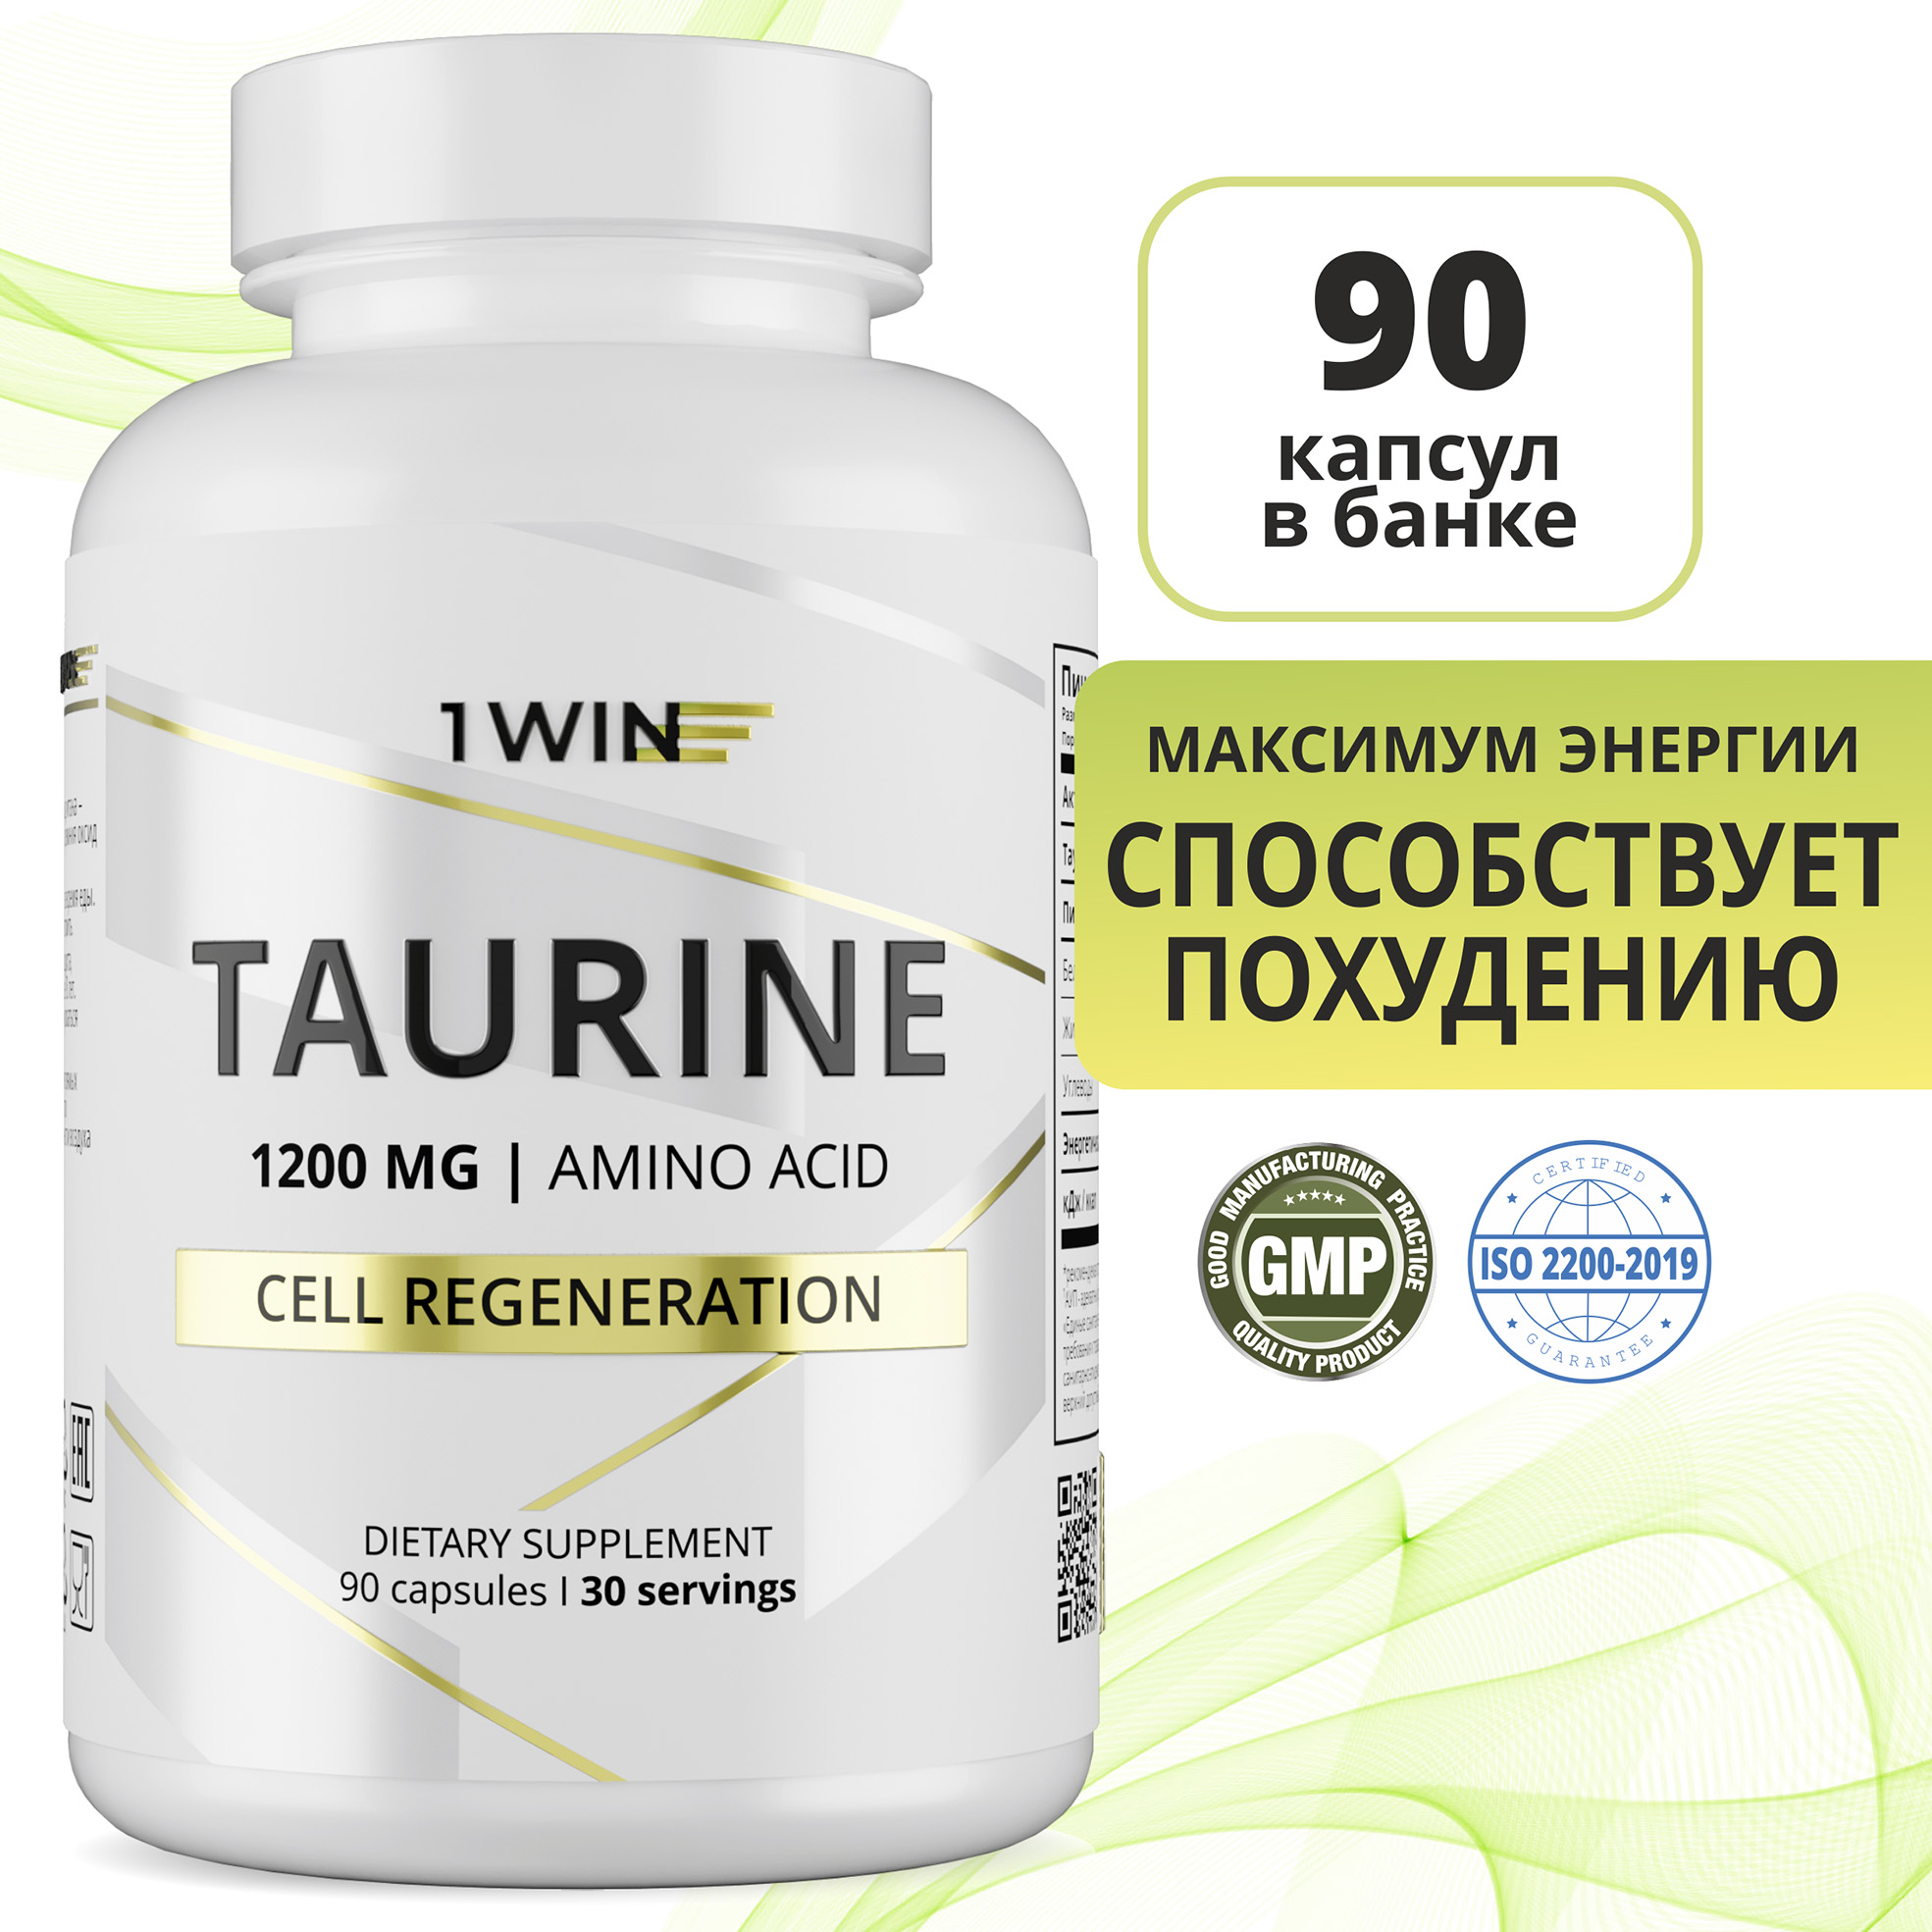 Аминокислота Таурин 1WIN 1200 мг (Taurine), для сердца, энергии и зрения, 90 капсул